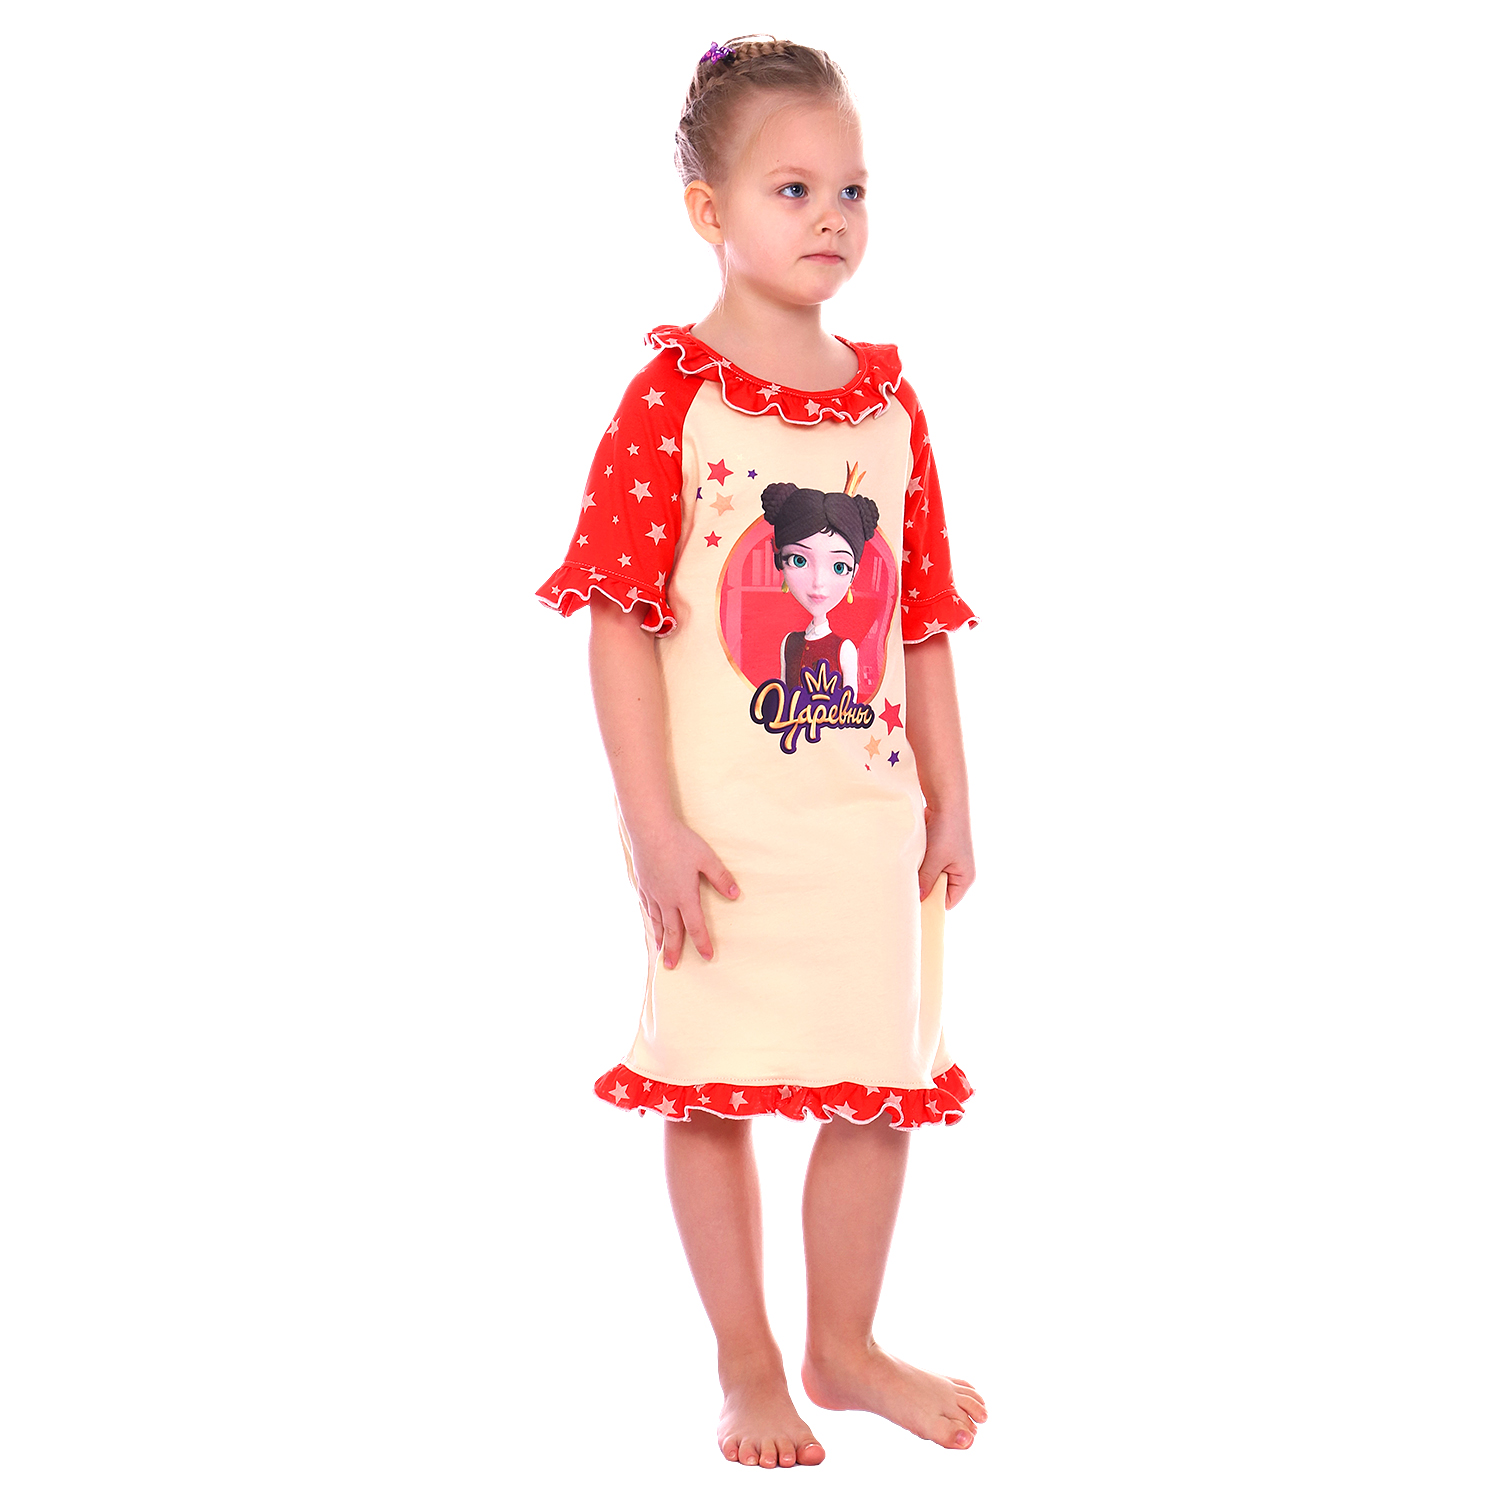 Сорочка ночная Детская Одежда S0506/молочный_красный - фото 2